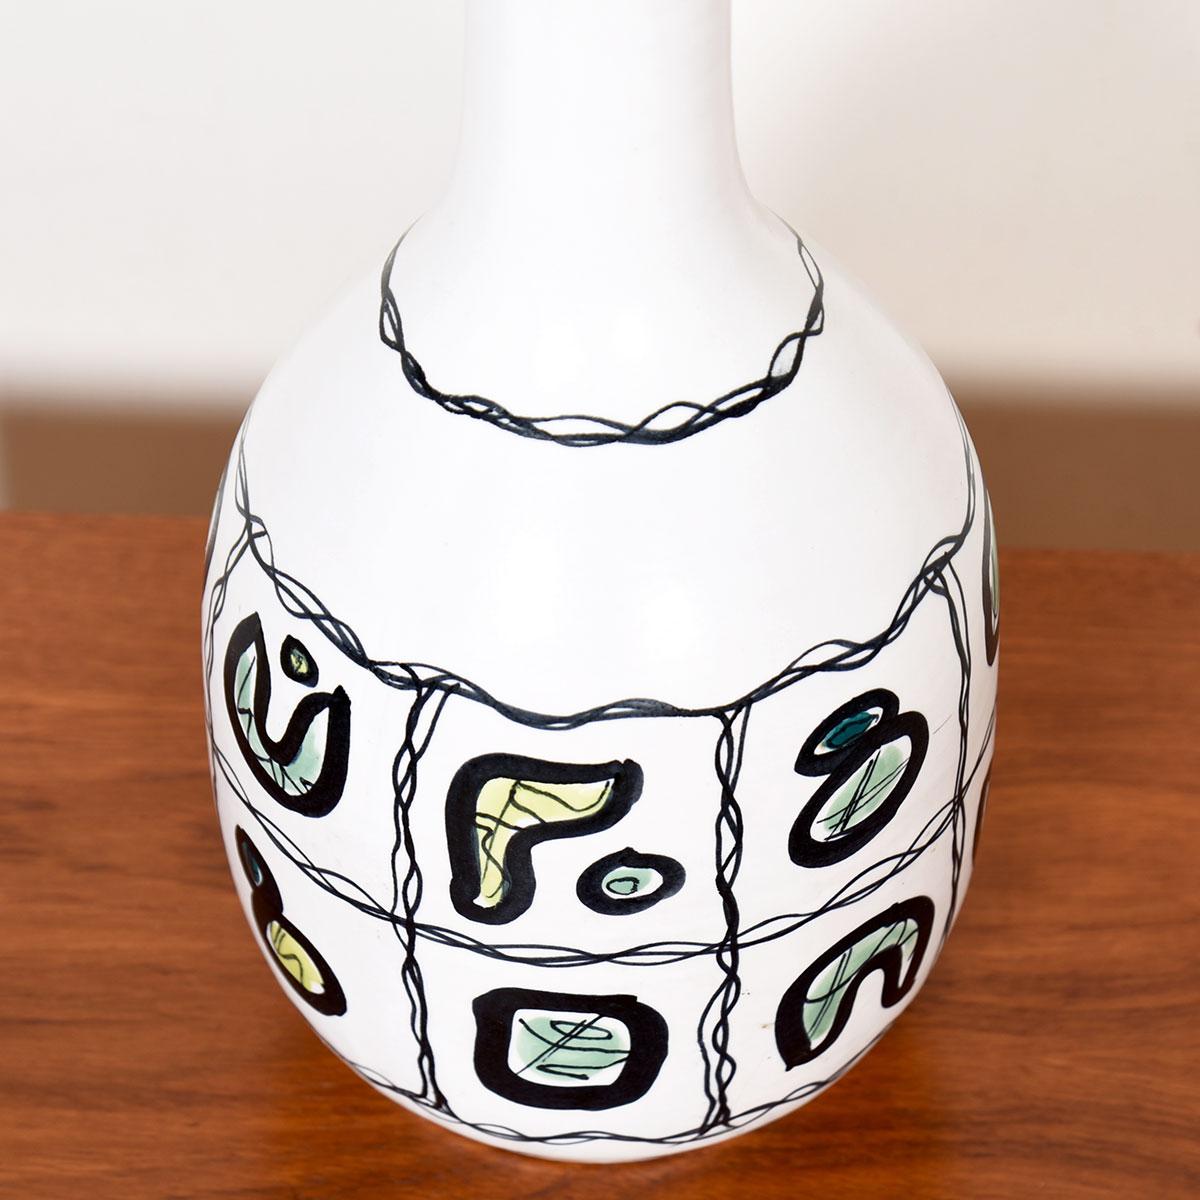 MCM Italienische Keramik-Tischlampe

Zusätzliche Informationen:
Ausgewählt in Kensington
Diese italienische Keramik- oder Majolika-Lampe hat eine klassische Form, aber ein ungewöhnliches Dekor. Die mattweiß lackierte 